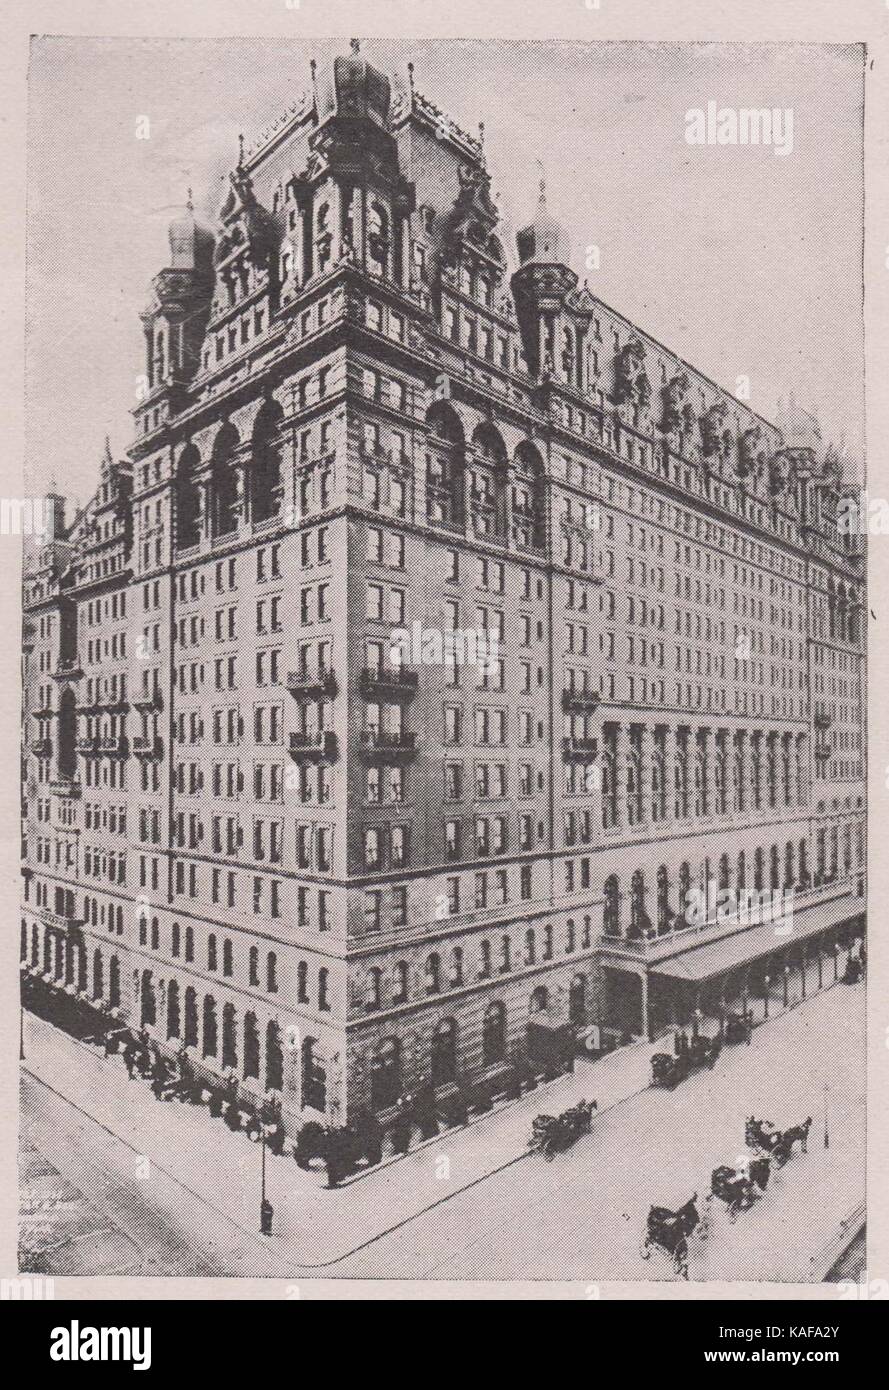 Hôtel Waldorf-Astoria, sur la Cinquième Avenue, entre les 33e et 34e Rues. 314 pieds de haut ; 1 400 chambres ; plus célèbre en Amérique latine Banque D'Images